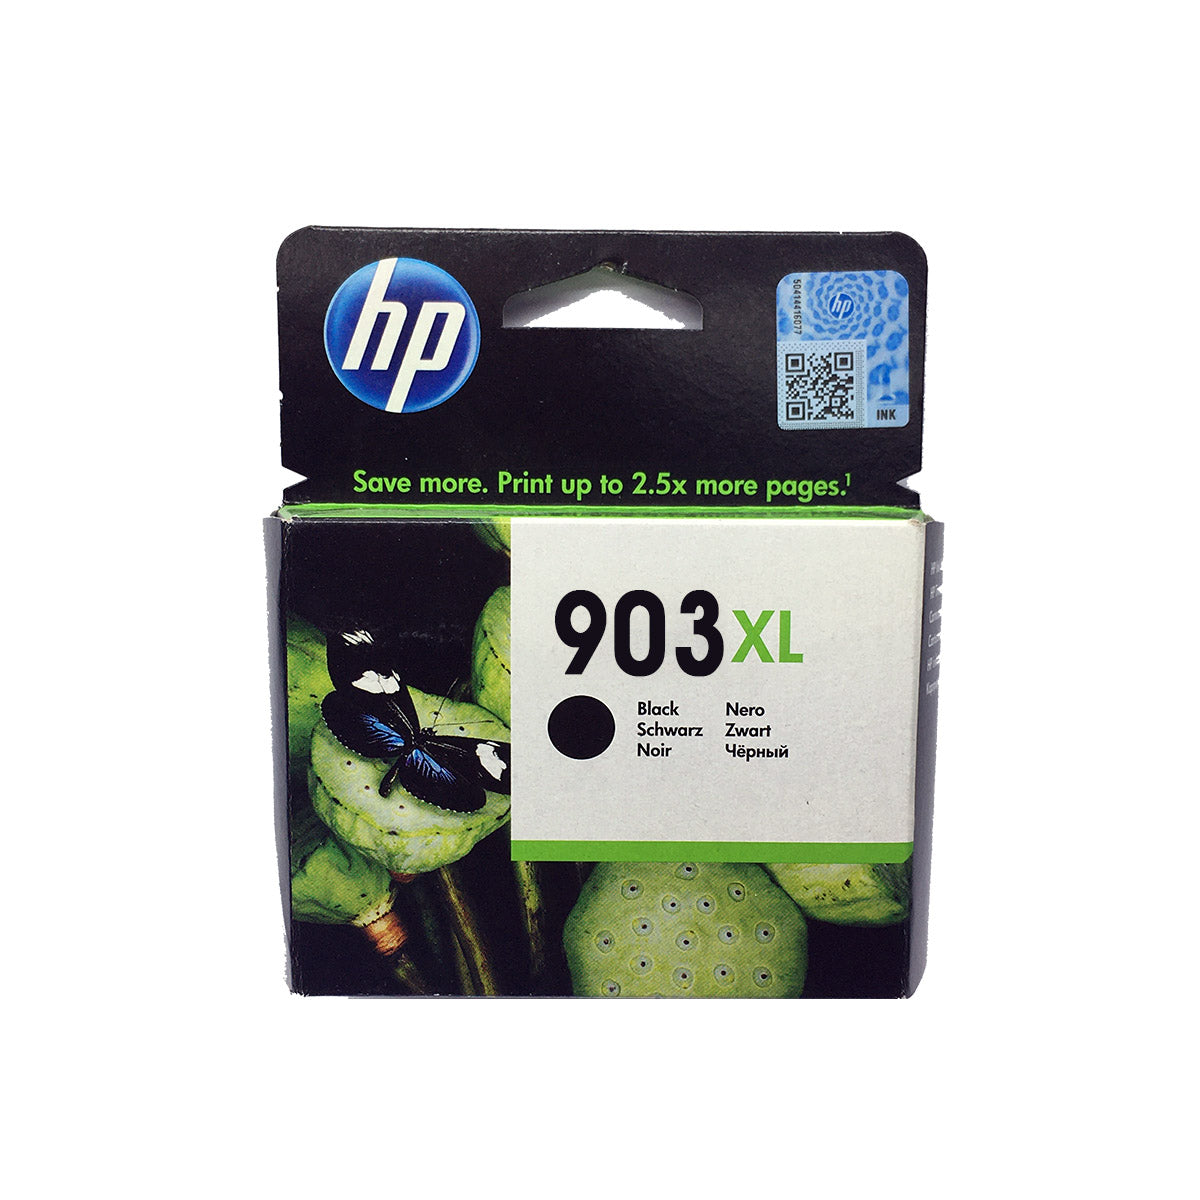 Shop HP 903XL Original Ink Cartridge Black Color online in Abu Dhabi, UAE